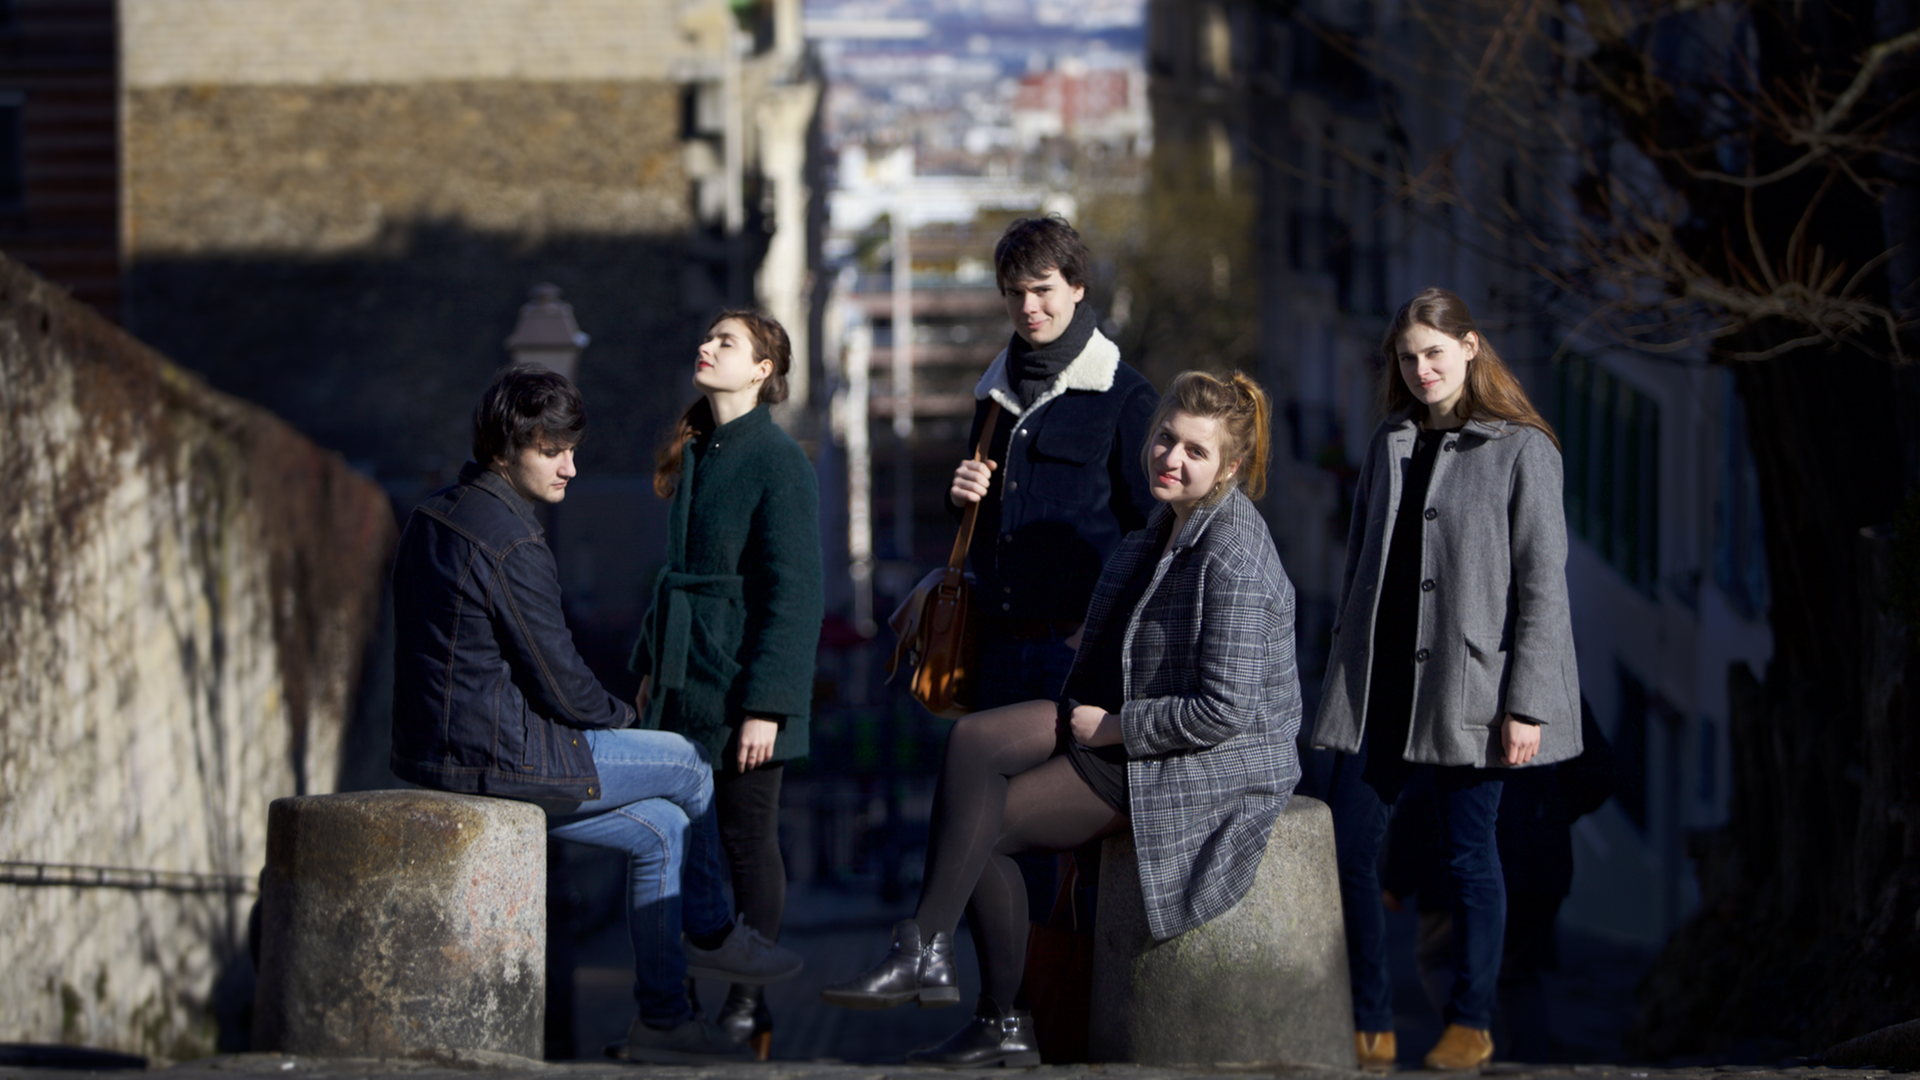 Das französische Ensemble Le Consort besteht aus fünf Migliedern, zwei Männern, drei Frauen, die sich in Winterkleidung zum Teil sitzend, zum Teil stehend in einer Gasse positioniert haben.